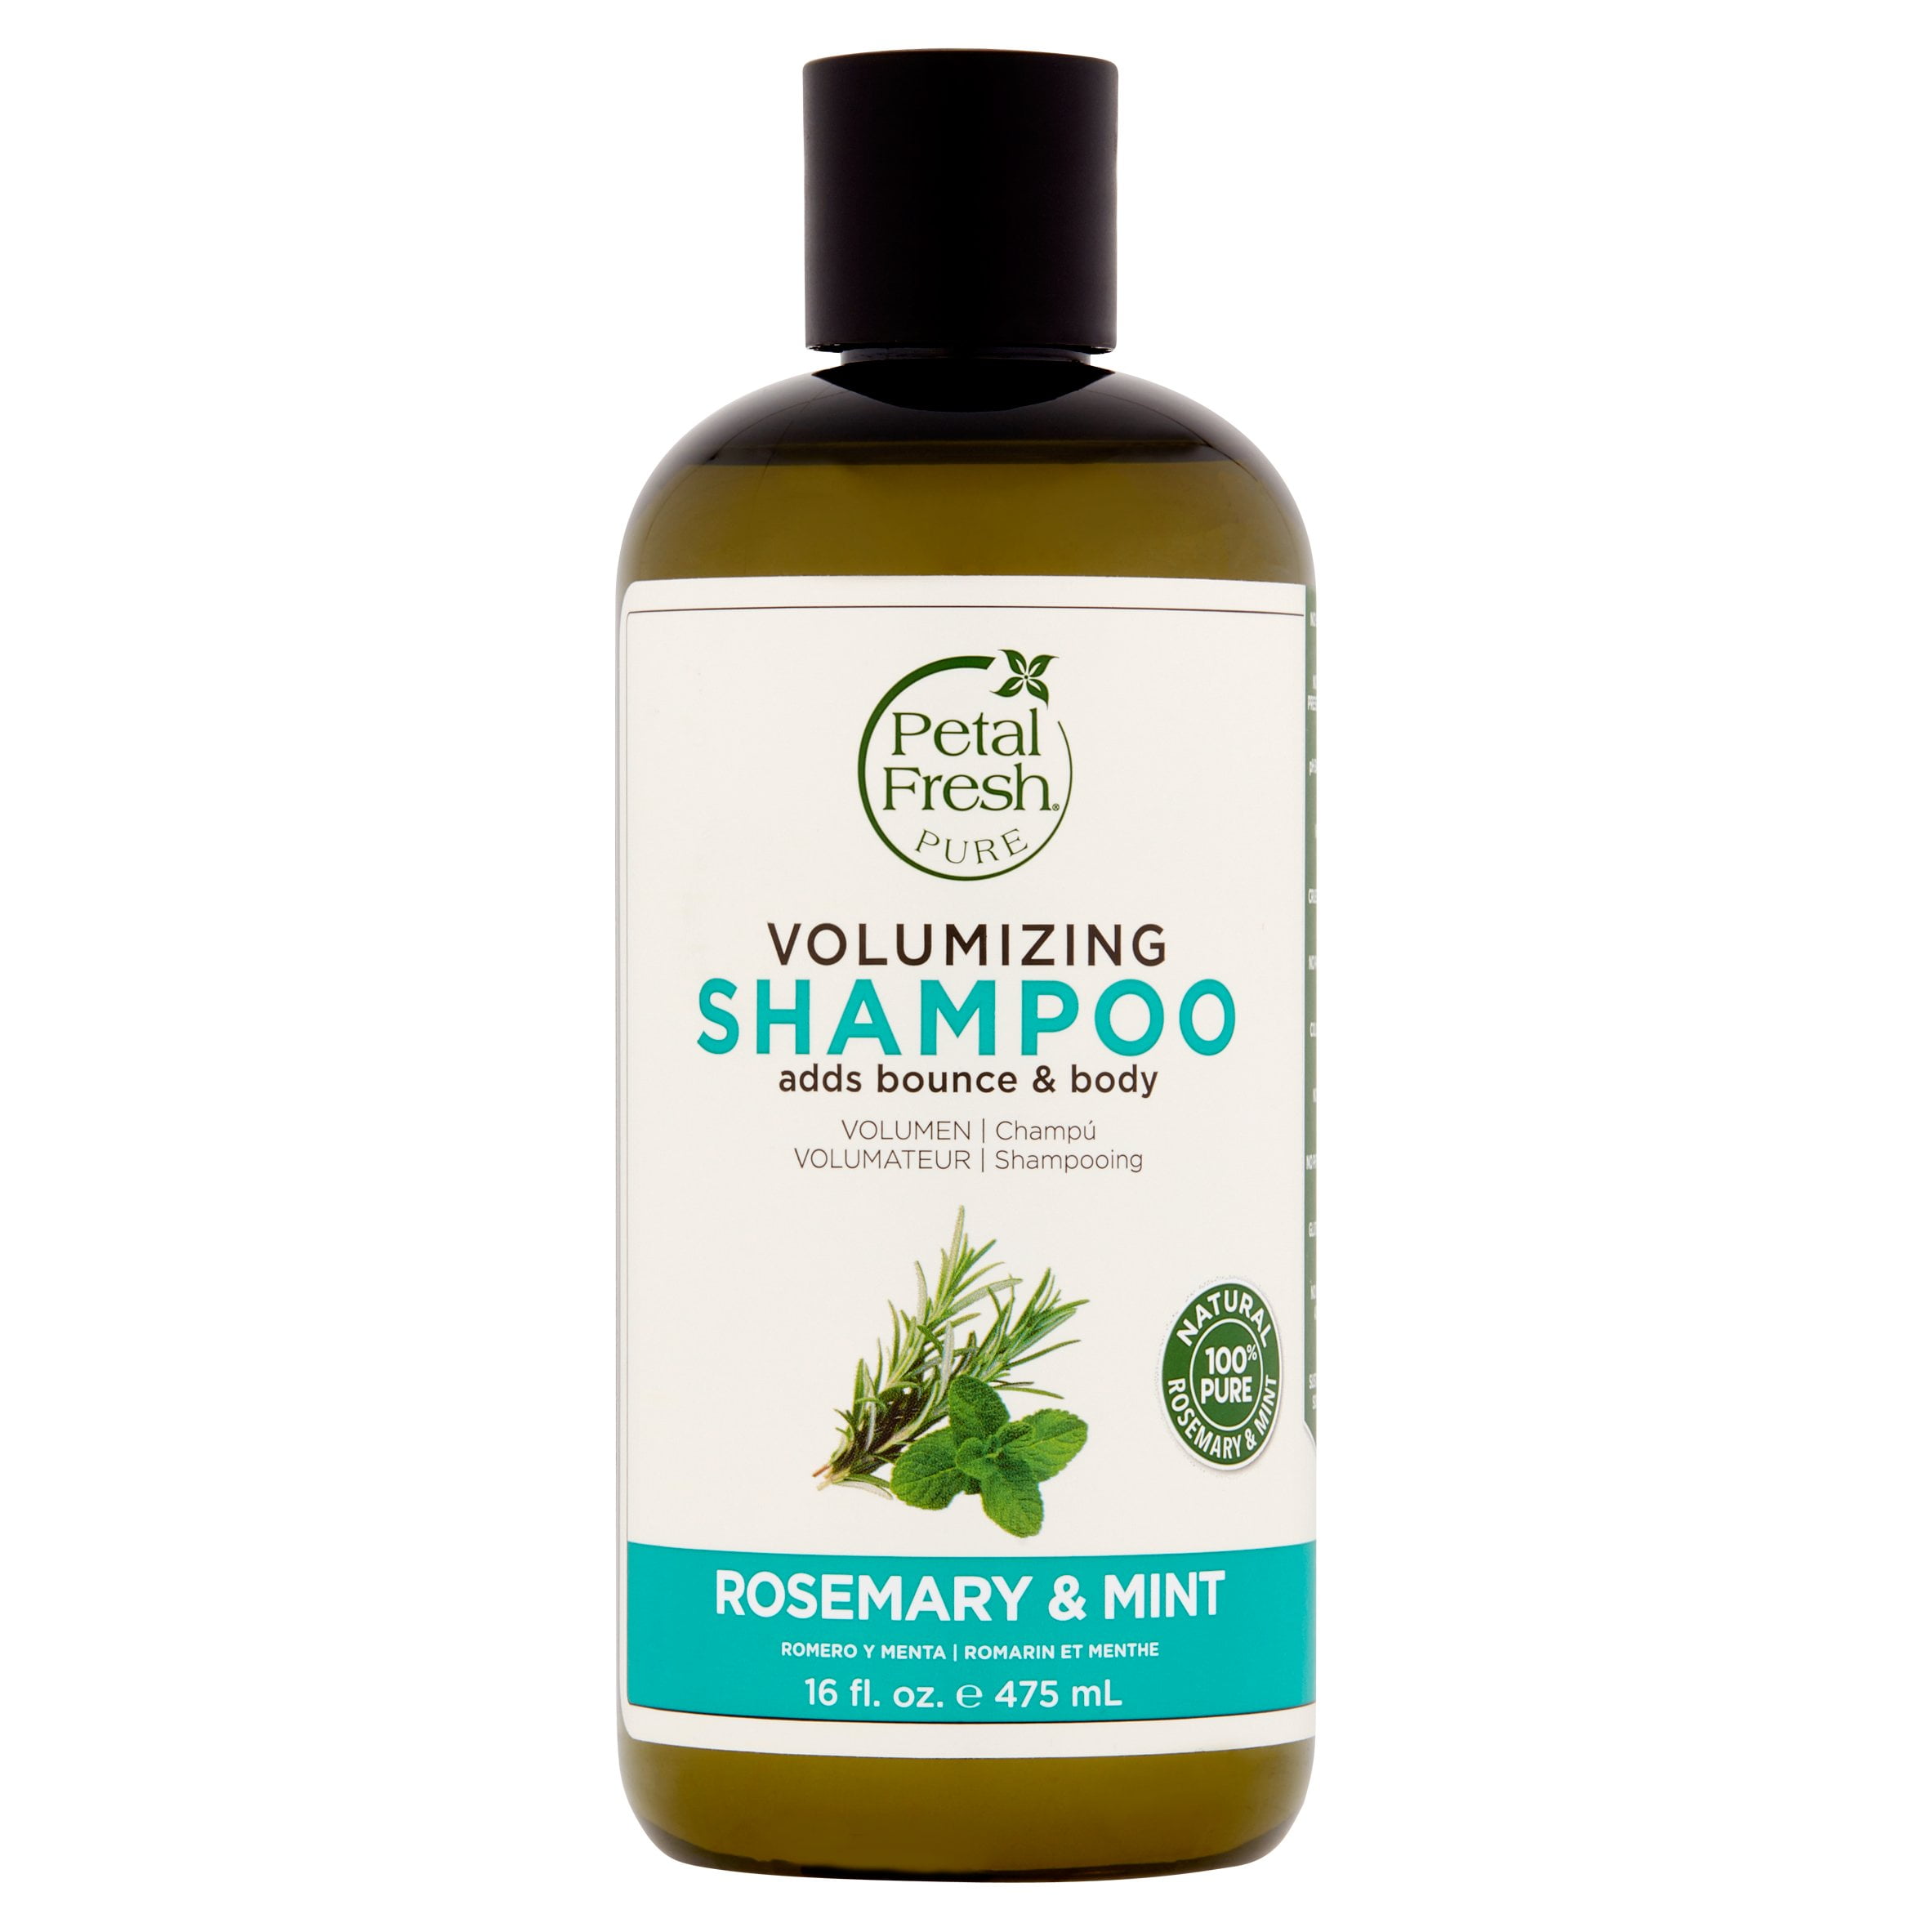 travel size rosemary mint shampoo